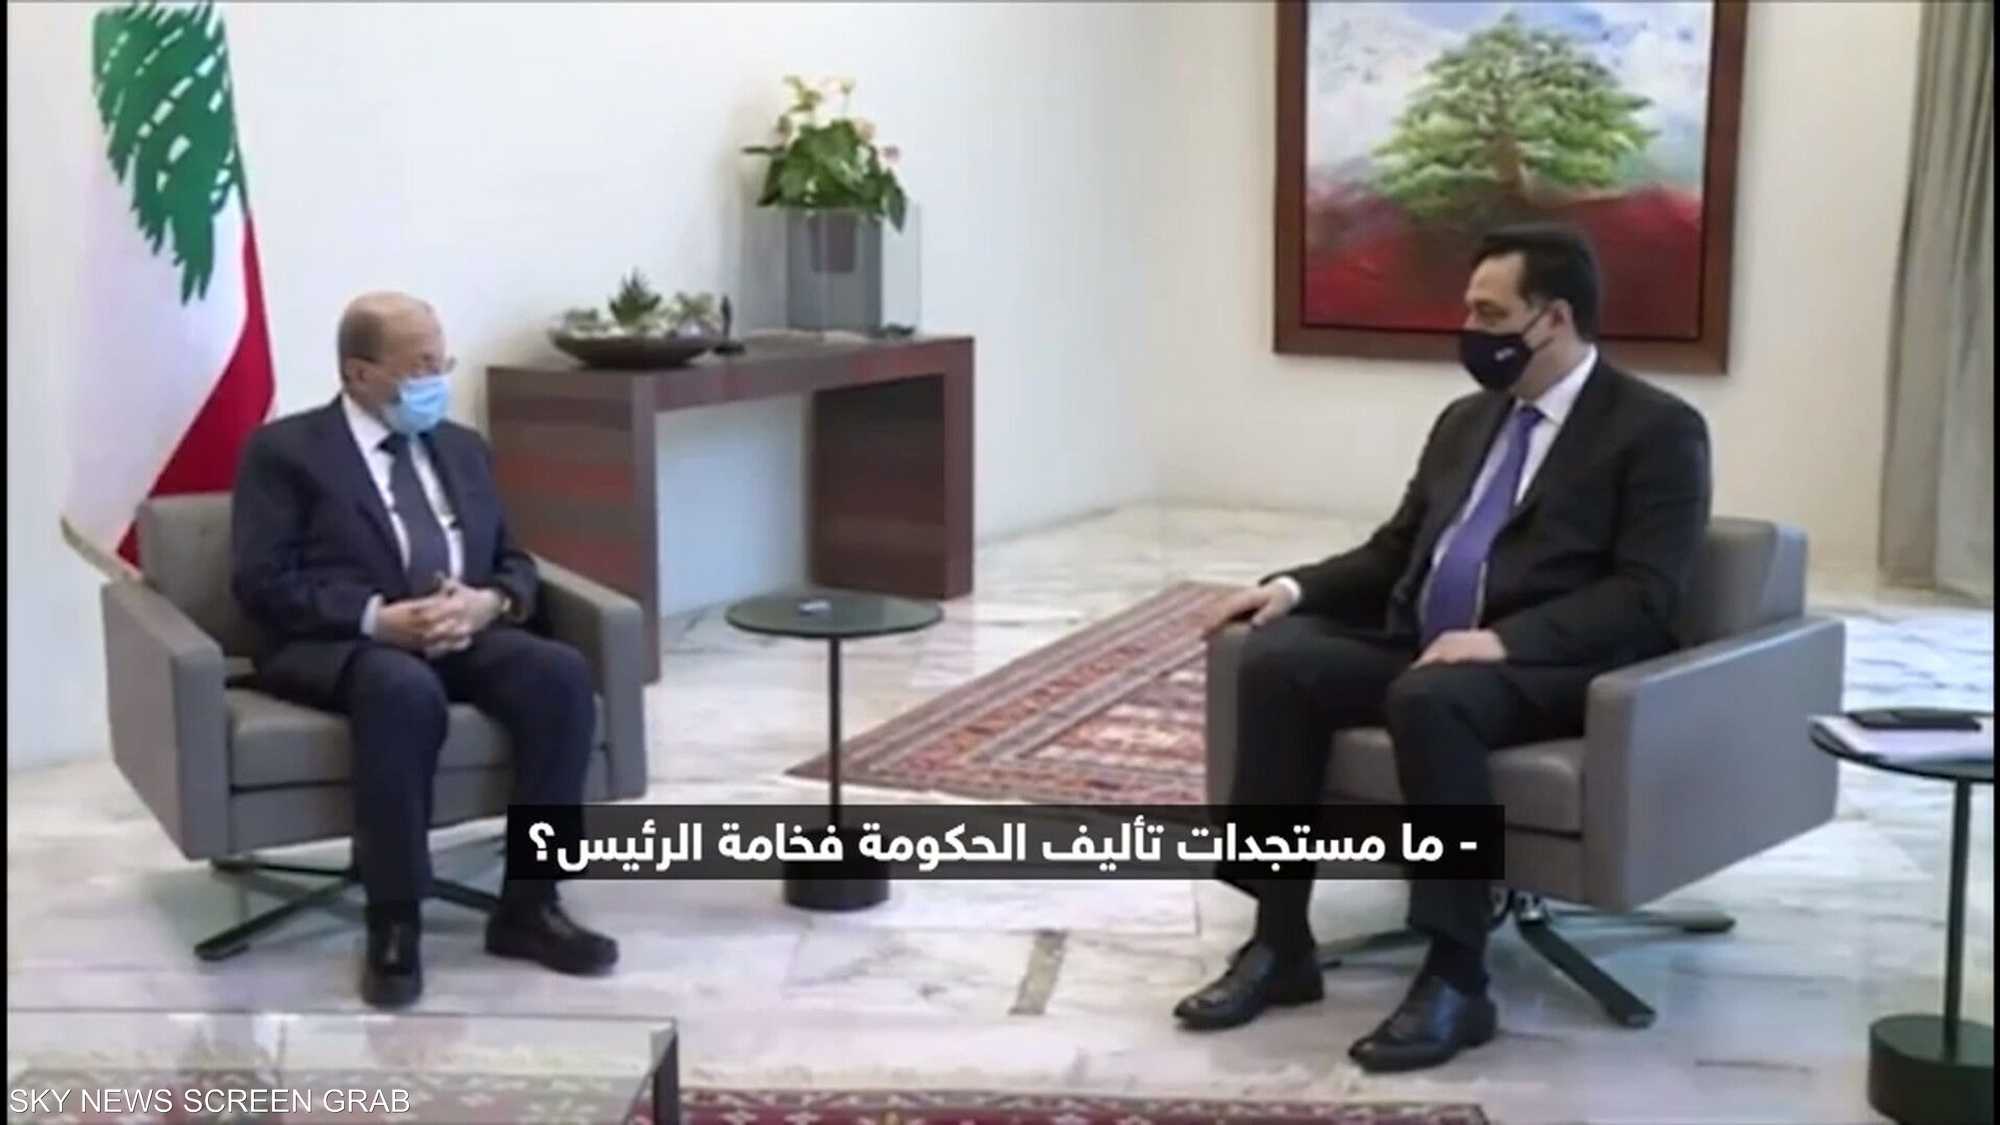 فيديو مسرب للرئيس اللبناني يثير ضجة على مواقع التواصل